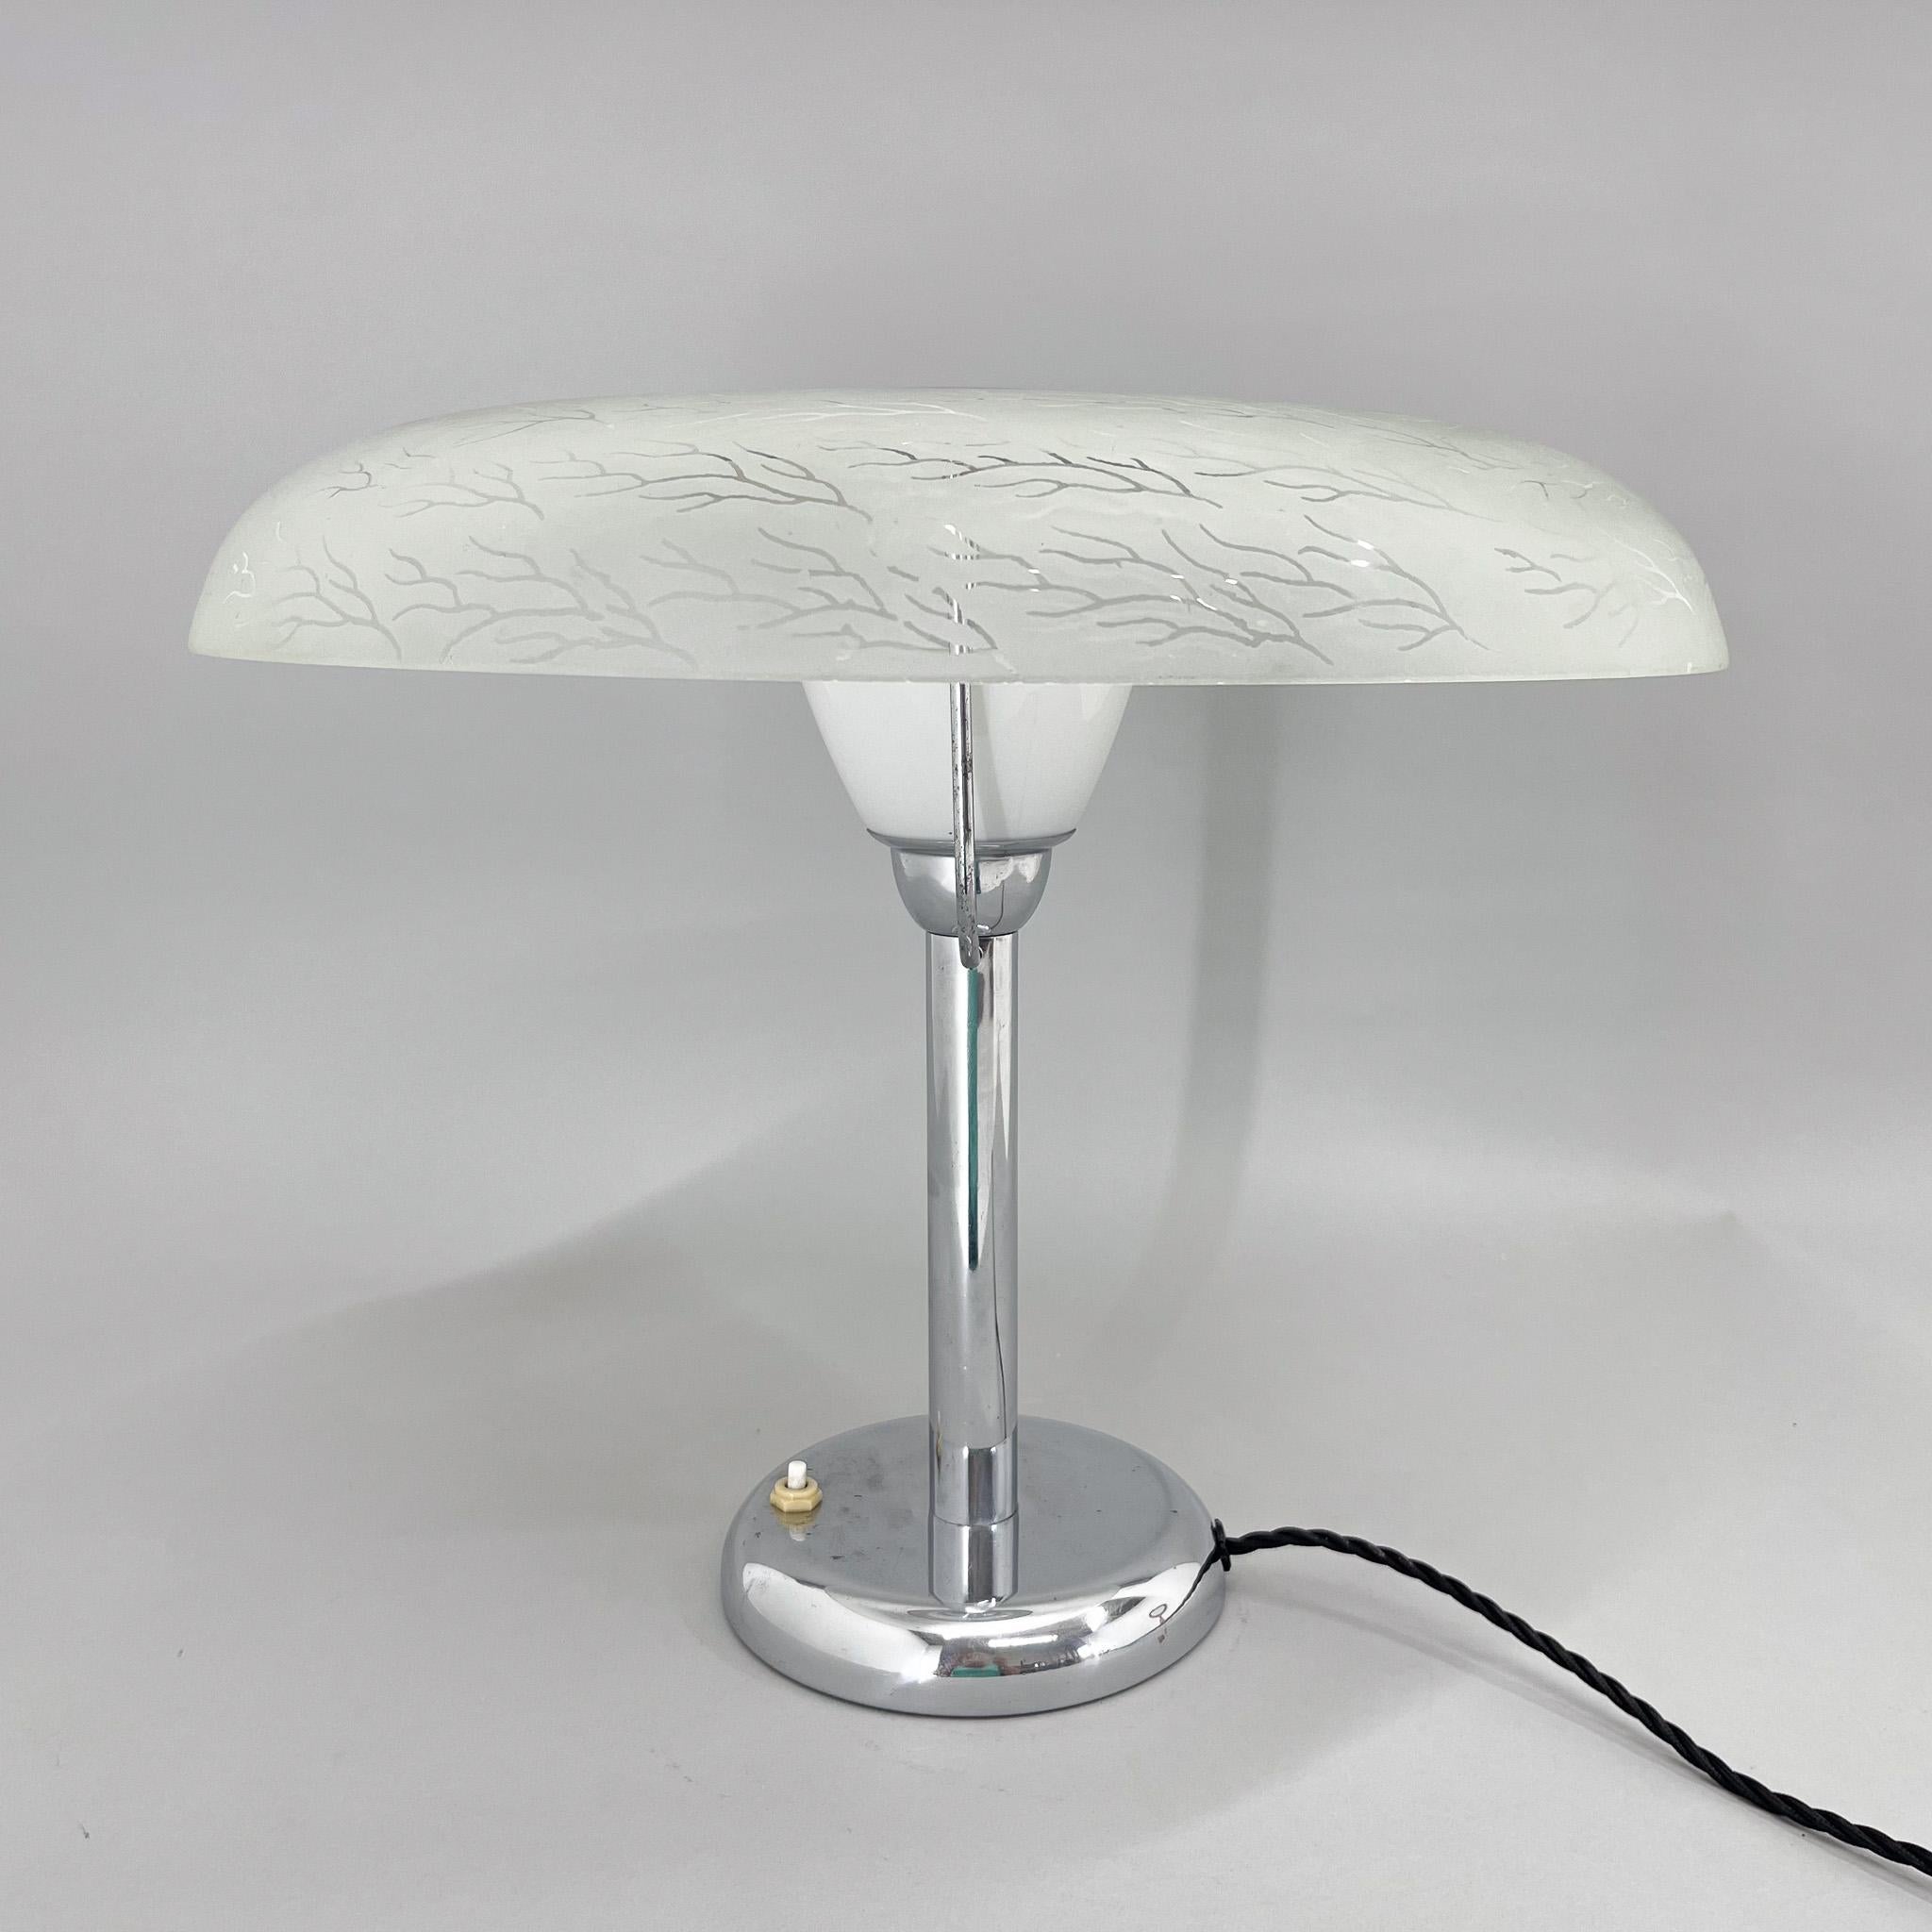 Grande lampe de table Bauhaus ou fonctionnaliste en chrome et bel abat-jour en verre unique. 
Restauré, recâblé. Ampoule : 1 x E25-E27. Adaptateur pour prise américaine inclus.